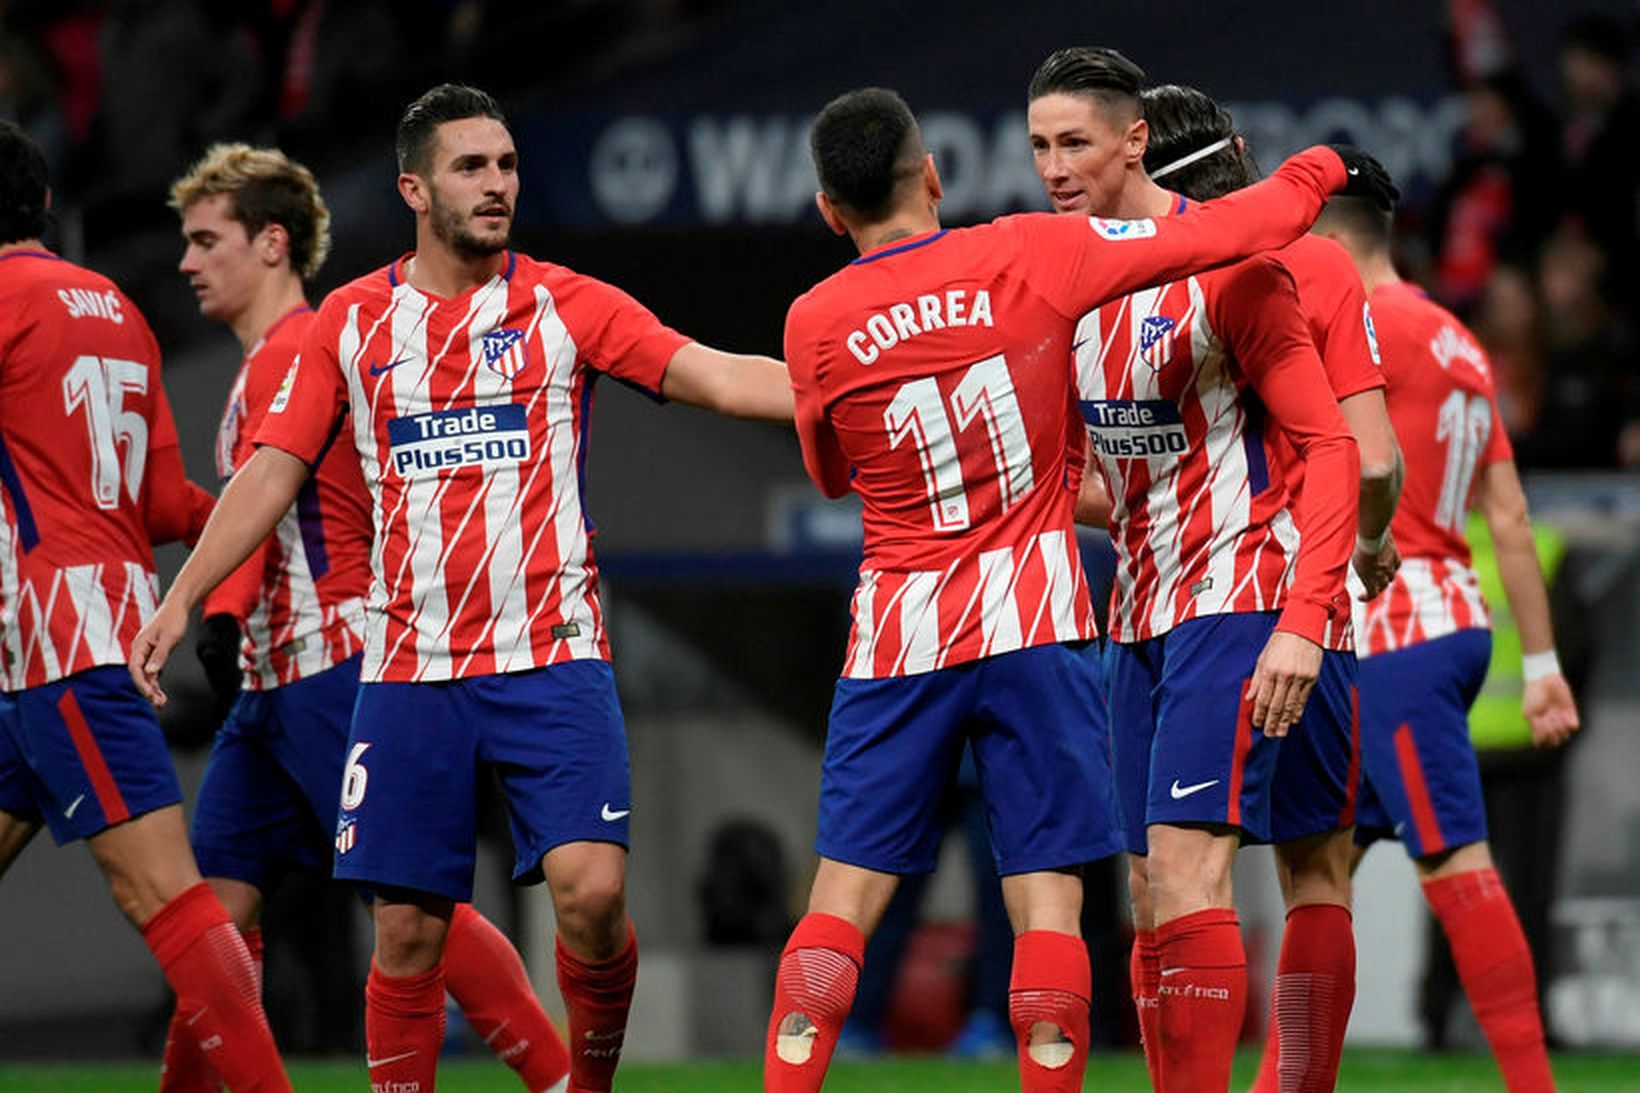 Leikmenn Atlético Madrid fagna marki Torres í gærkvöld.